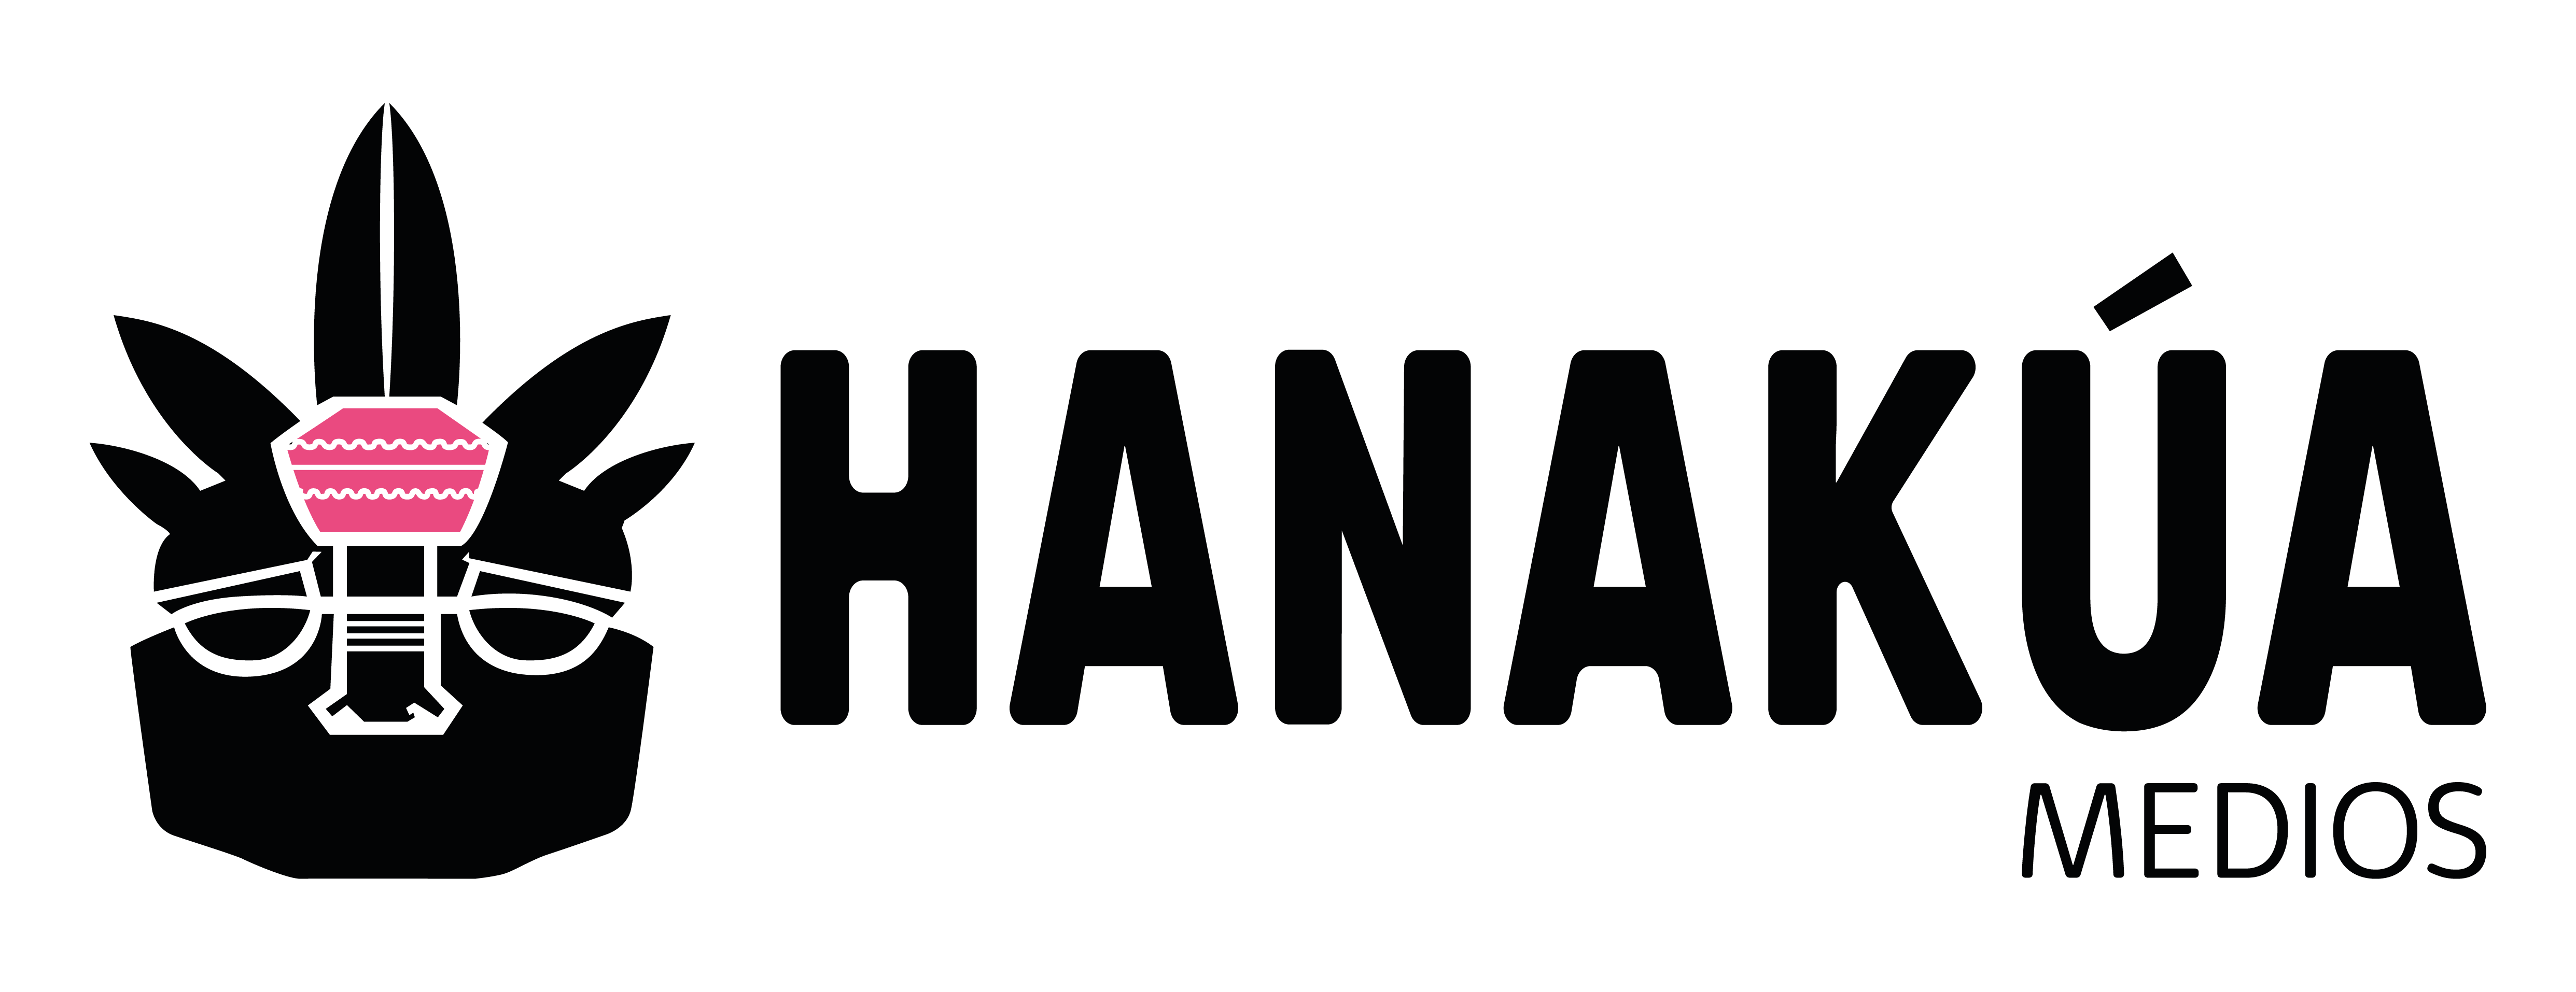 Hanakua_logo-1